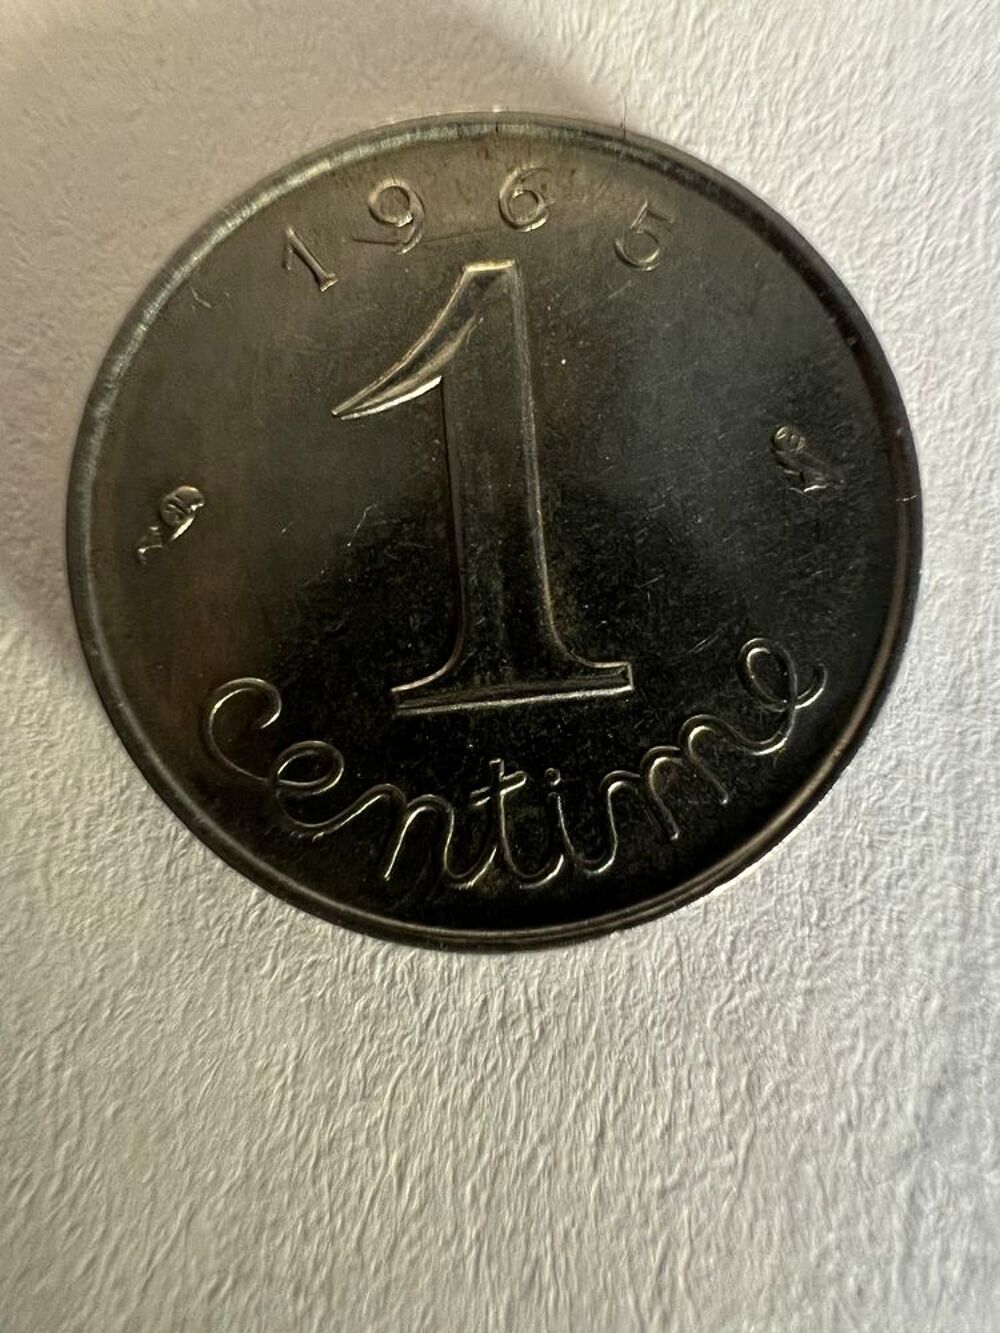 1 centimes de franc 1965. 